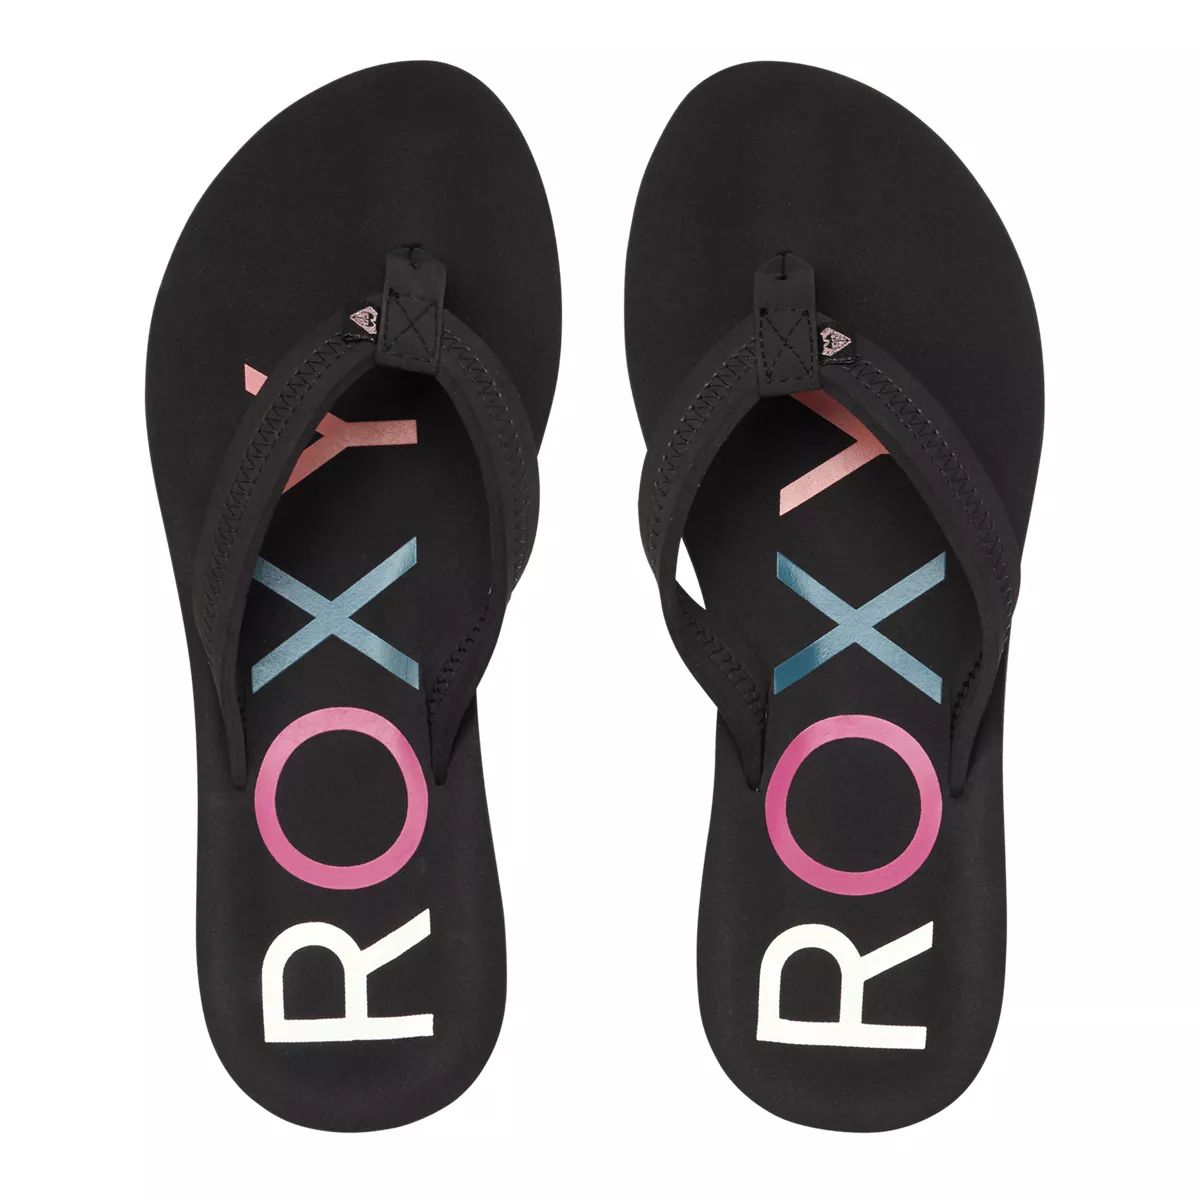 Roxy Womens Flip Flop Sandals Size 10 Black White Palm Design Dual